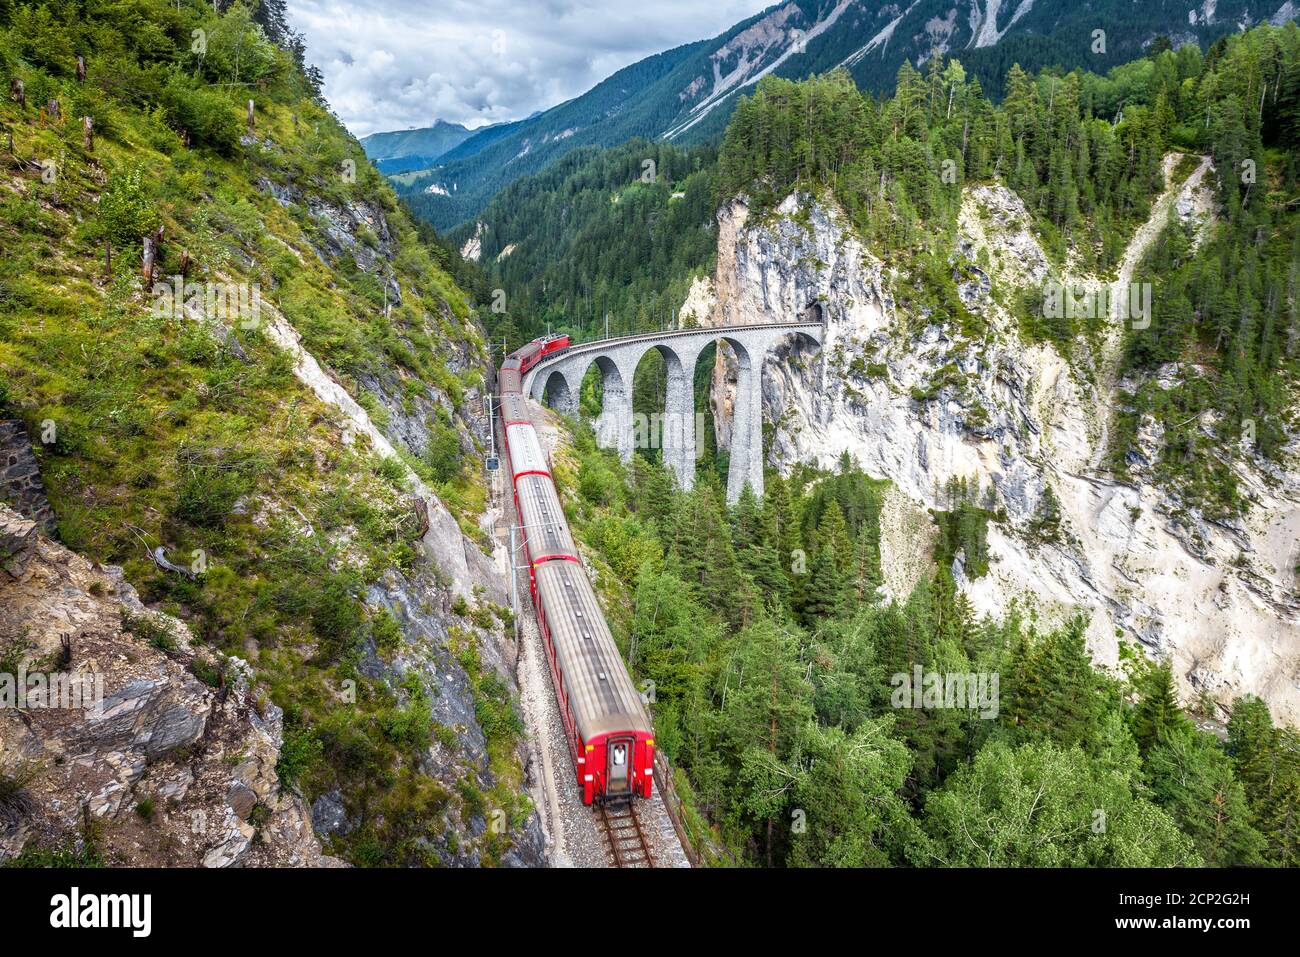 Der Zug fährt auf dem Landwasser Viadukt, Filisur, Schweiz. Dieser Ort ist Wahrzeichen der Schweizer Alpen. Landschaftlich schöner Blick auf die hohe Eisenbahnbrücke im Sommer. Berg Stockfoto